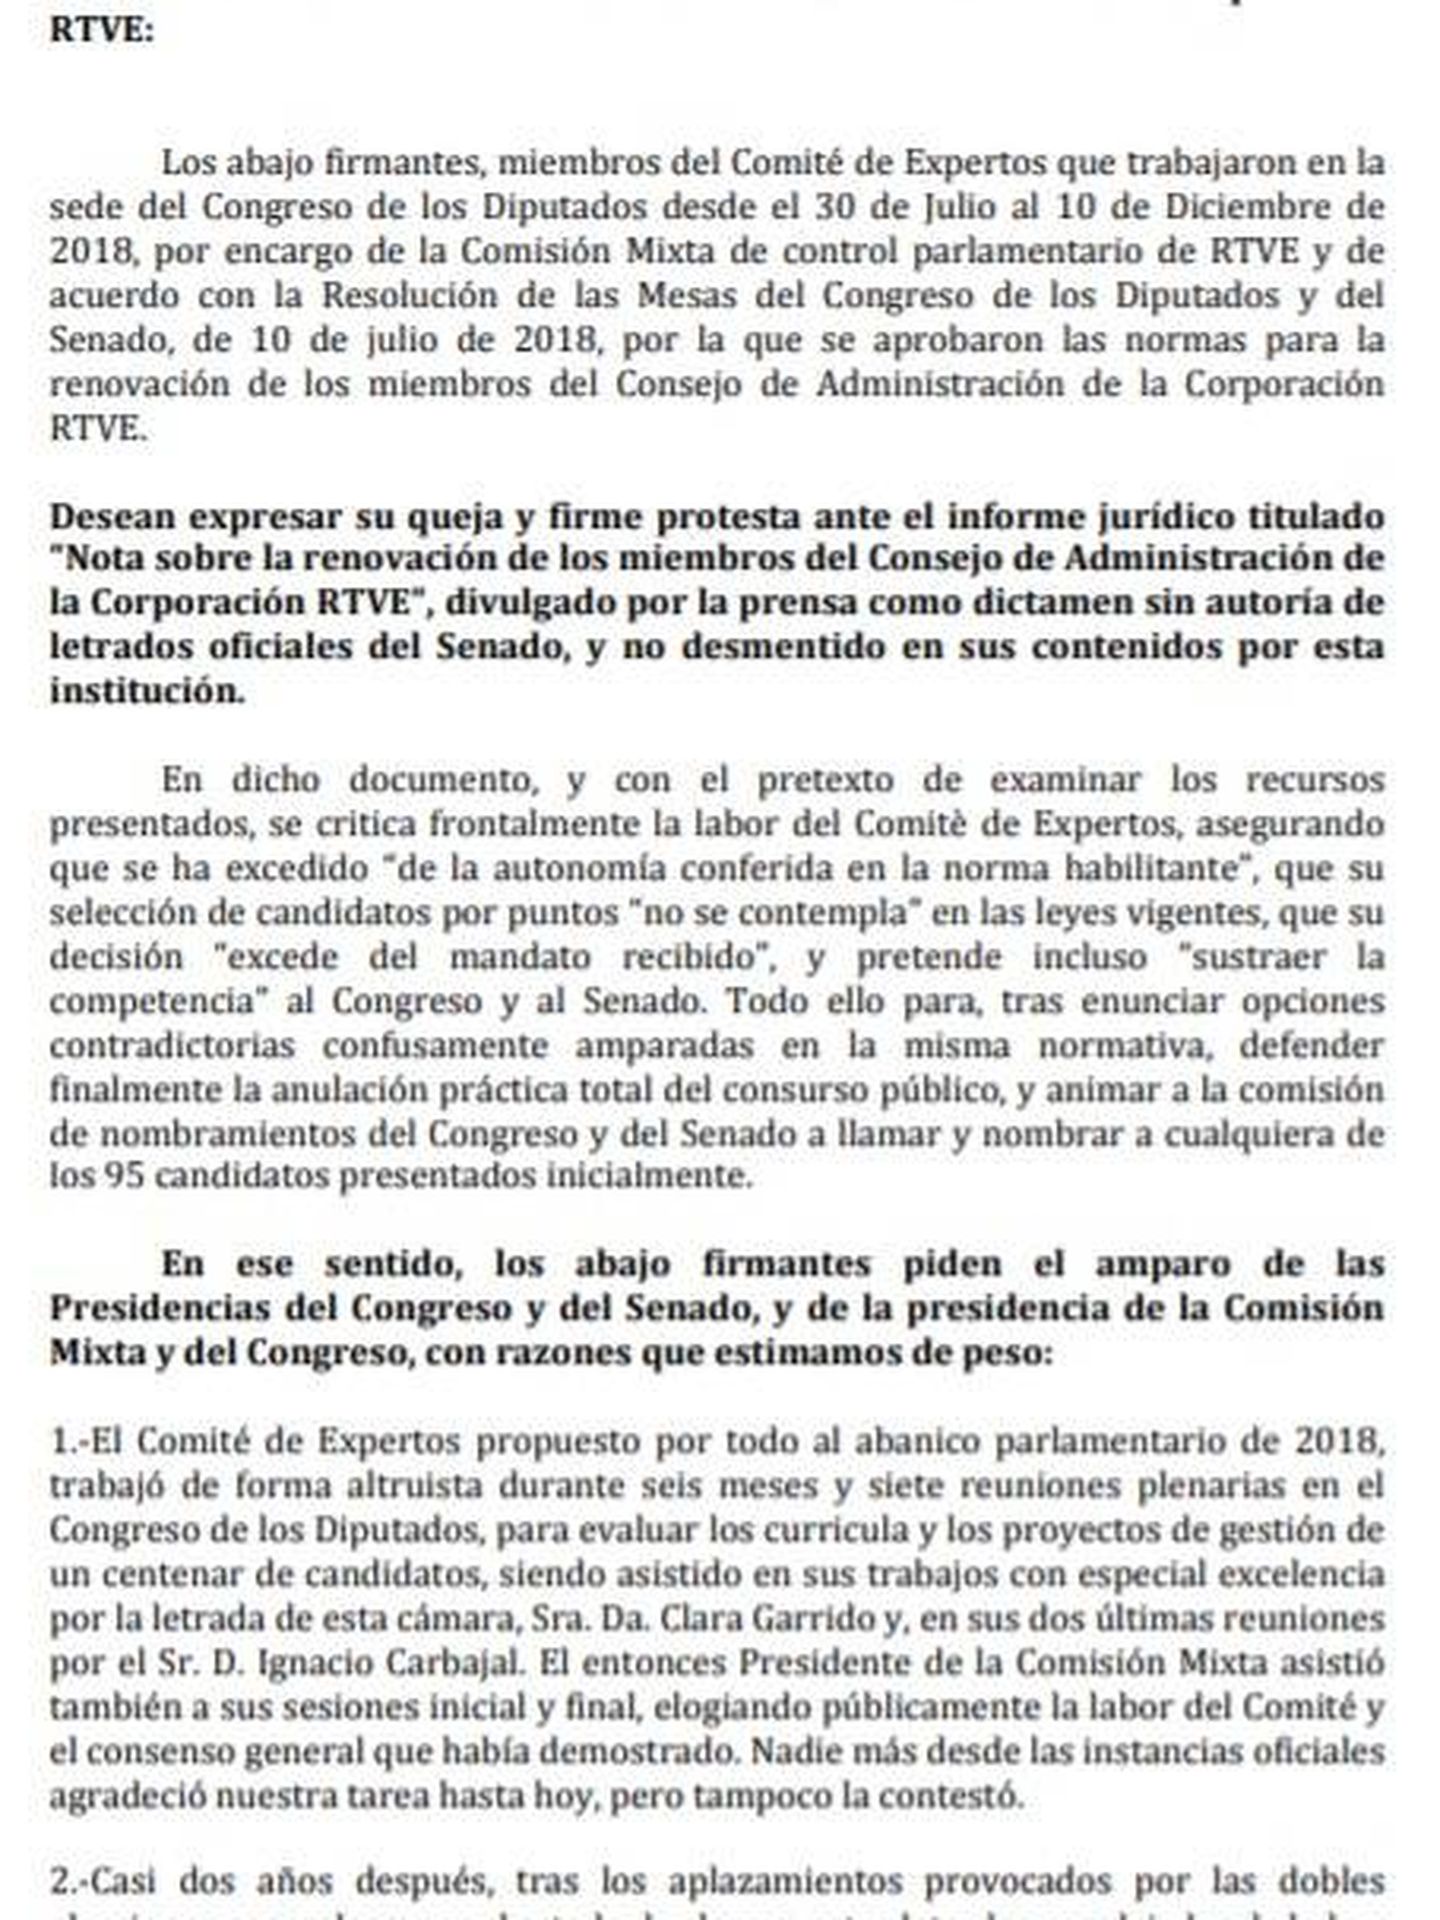 Consulte aquí en PDF el escrito que firman 13 de los 17 miembros del comité de expertos de RTVE contra los letrados de la Comisión Mixta de control parlamentario de la corporación. 